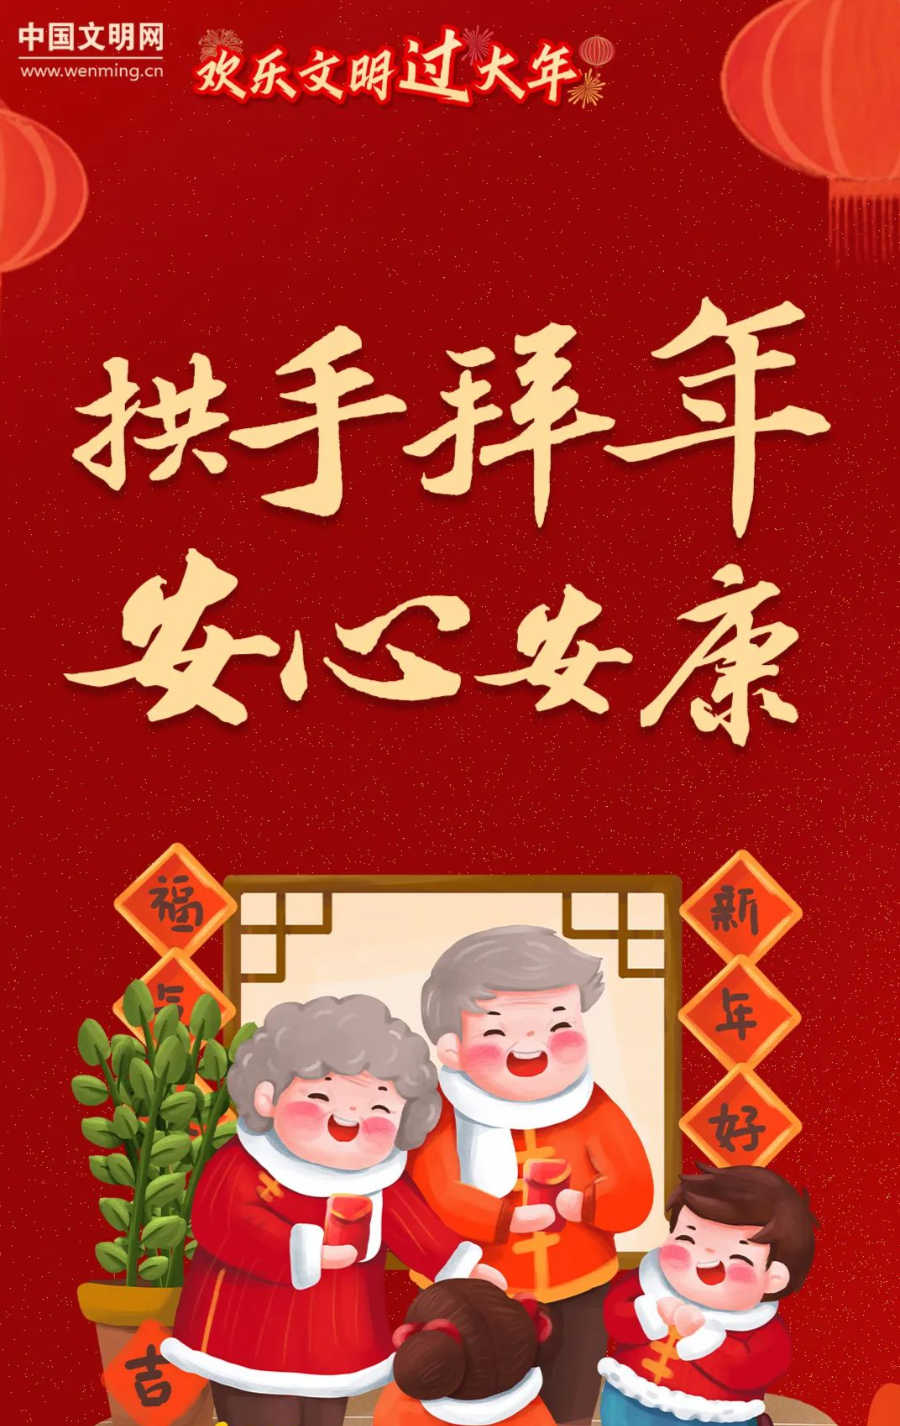 网络中国节·春节丨正月初一,云拜年,请转发到"相亲相爱一家人"